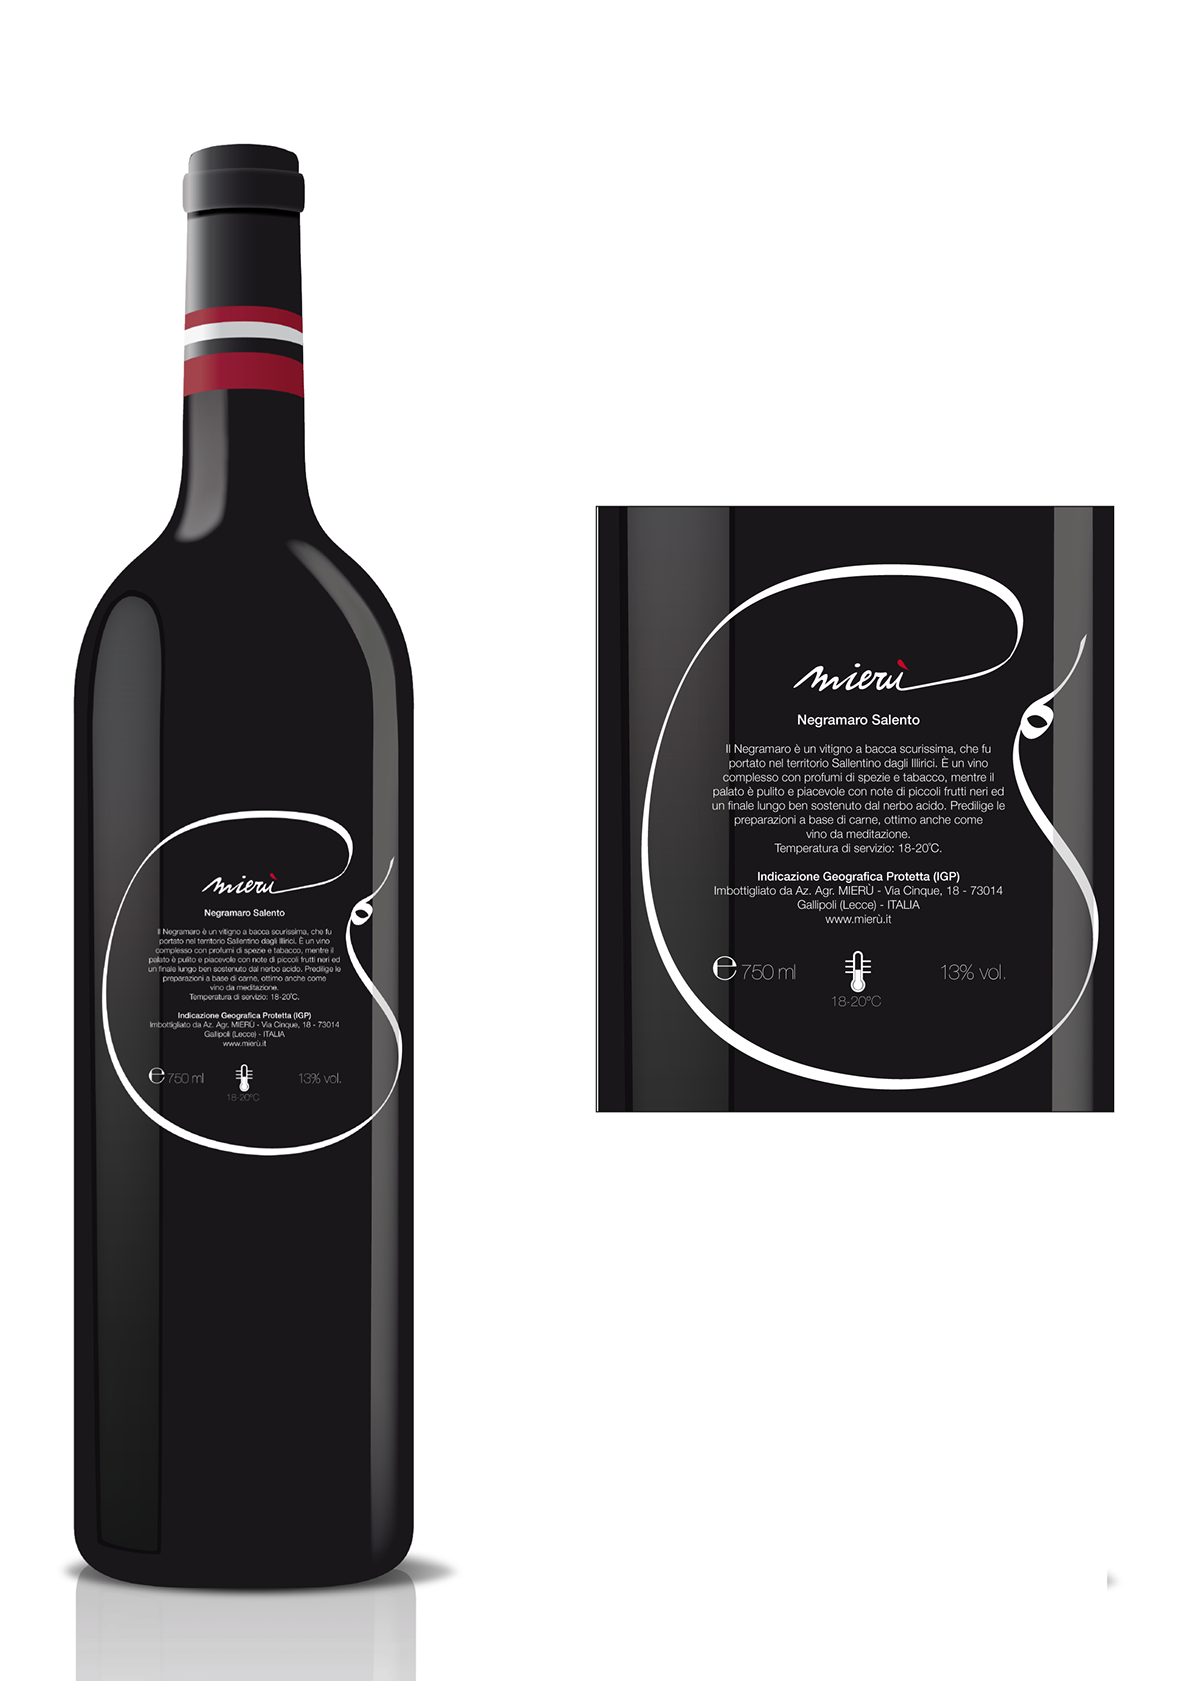 wine Negramaro salento Bottle of wine  label  vineyard